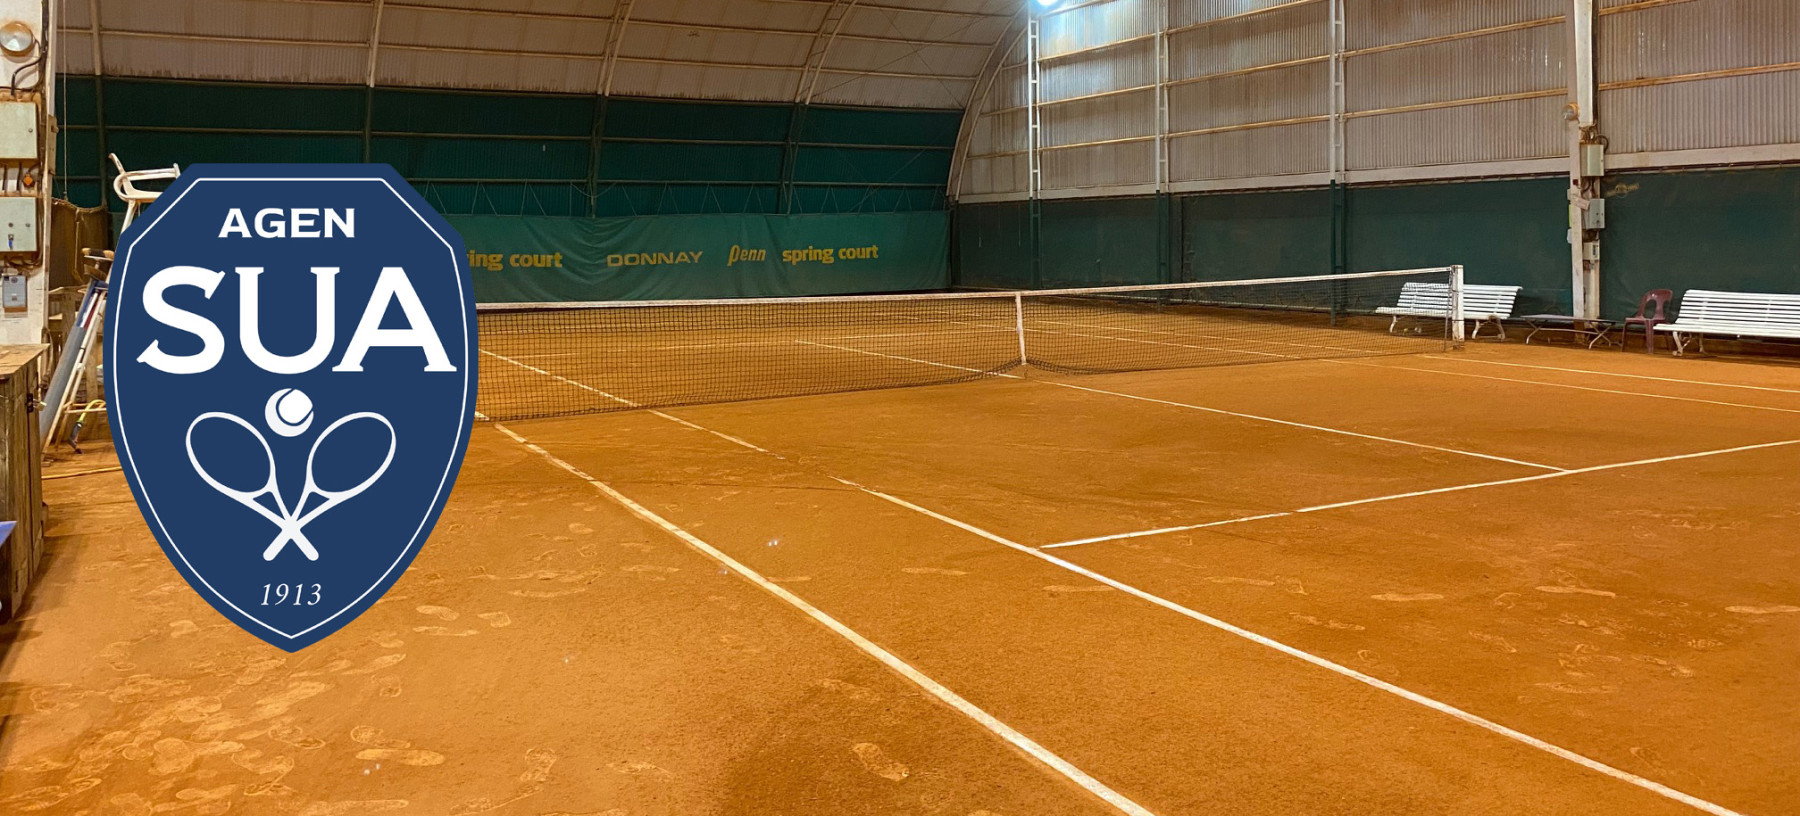 Jouer au tennis toute l'année à 5 minutes du centre-ville d'Agen ! 